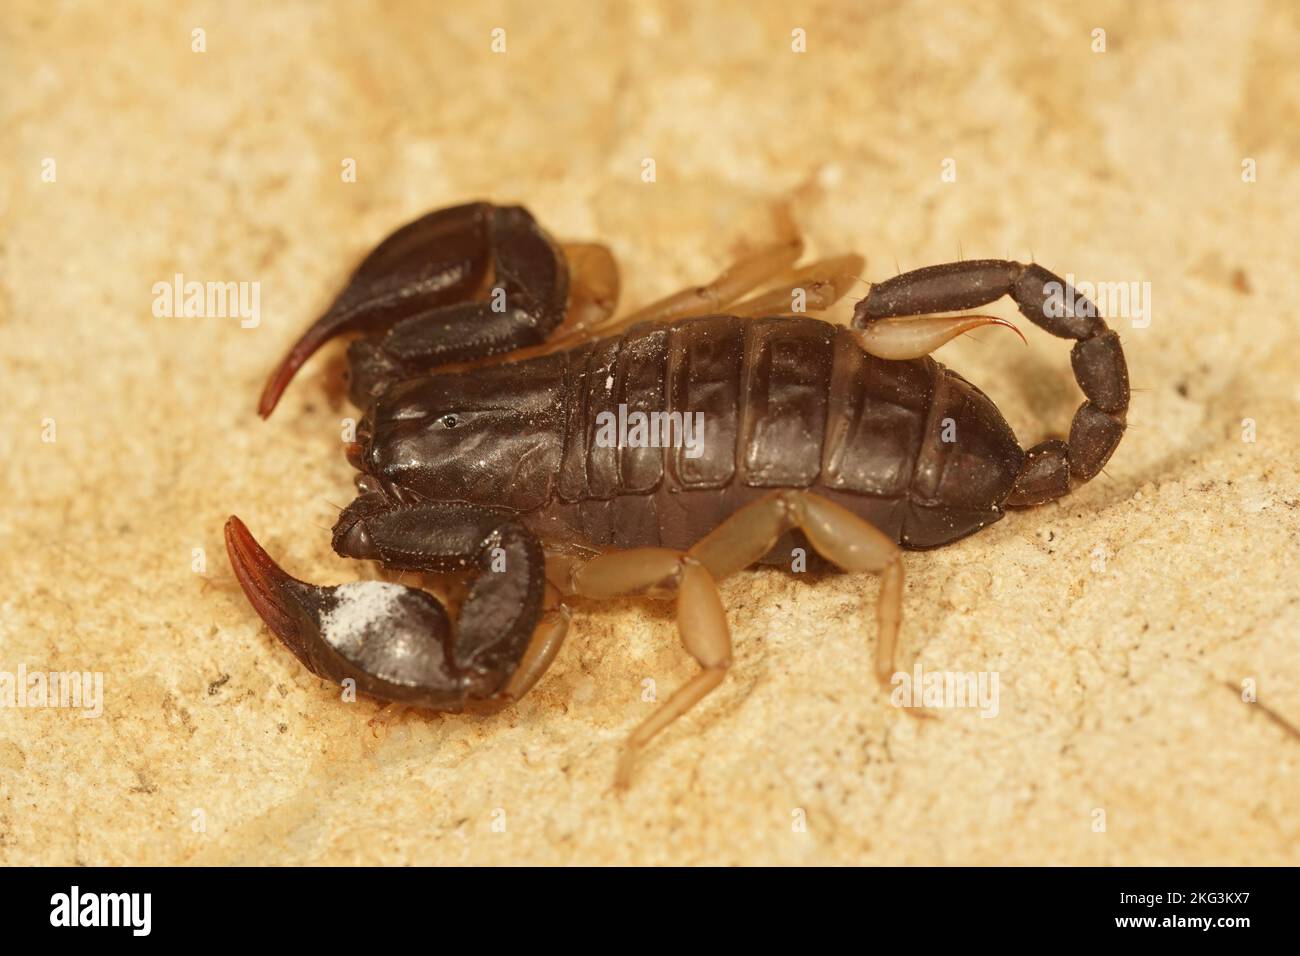 Closeup on the European yellow-tailed scorpion, Euscorpious flavicaudis sitting on a stone Stock Photo